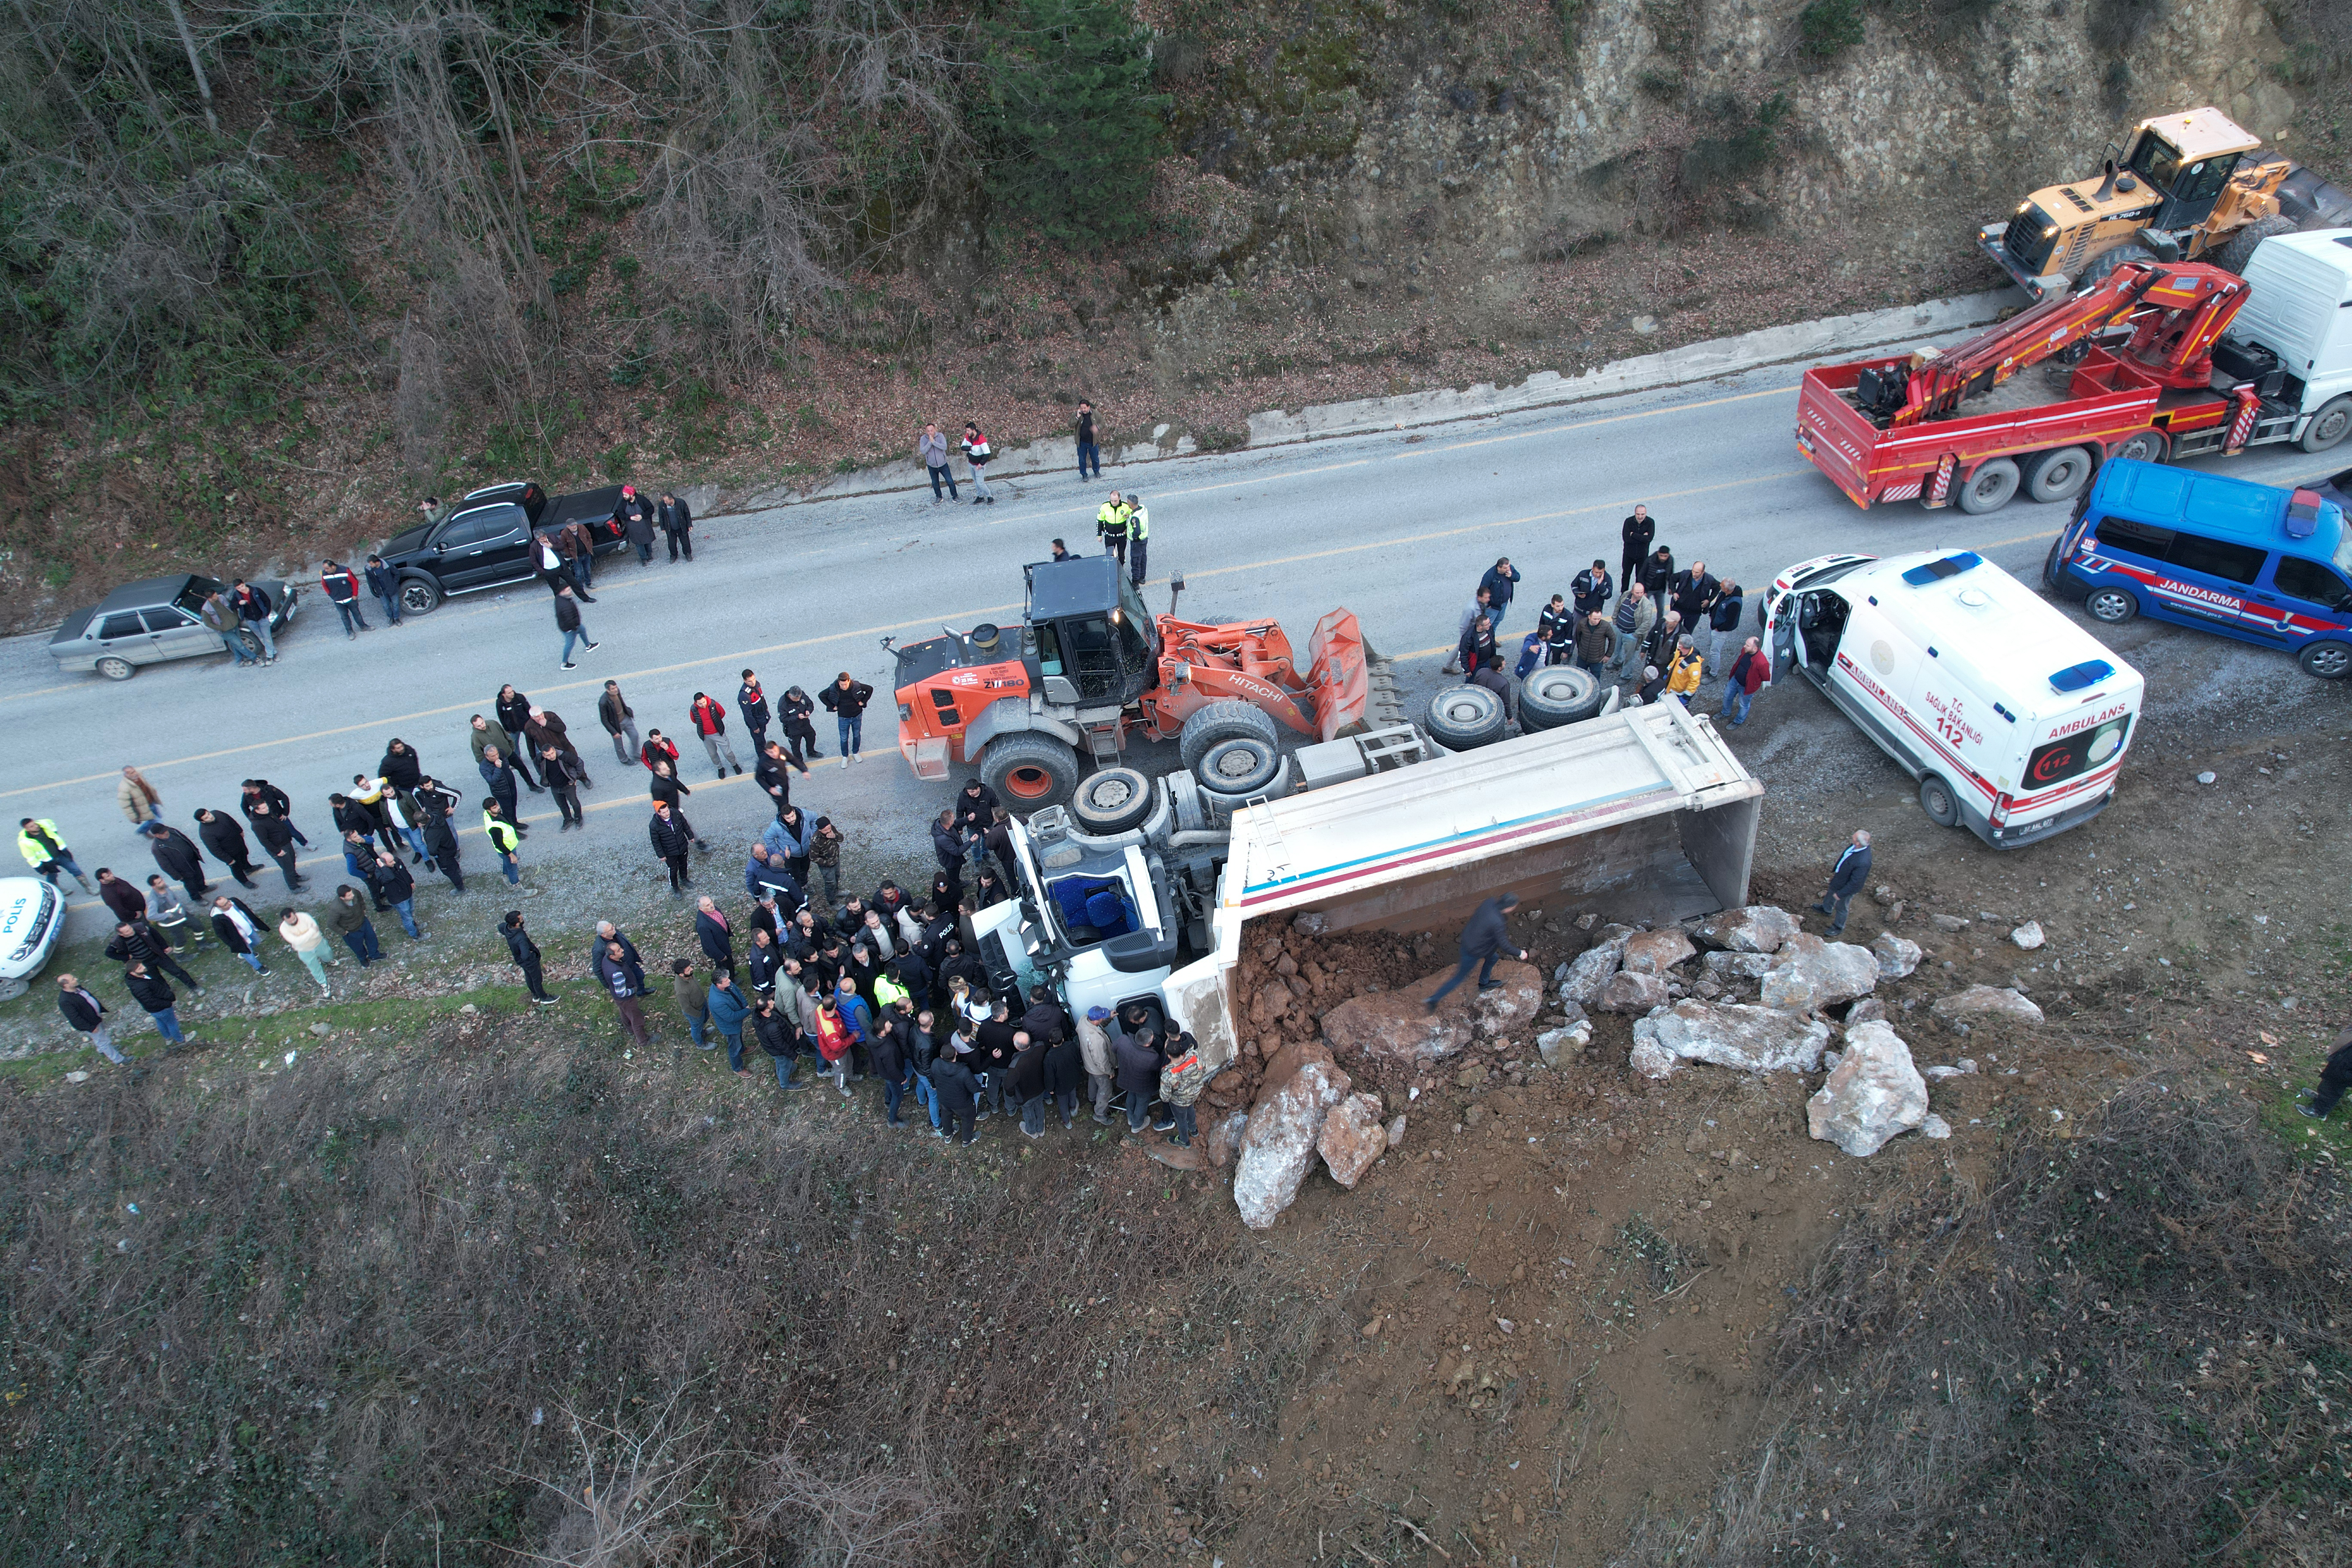 Kastamonu'da devrilen kamyonun sürücüsü hayatını kaybetti